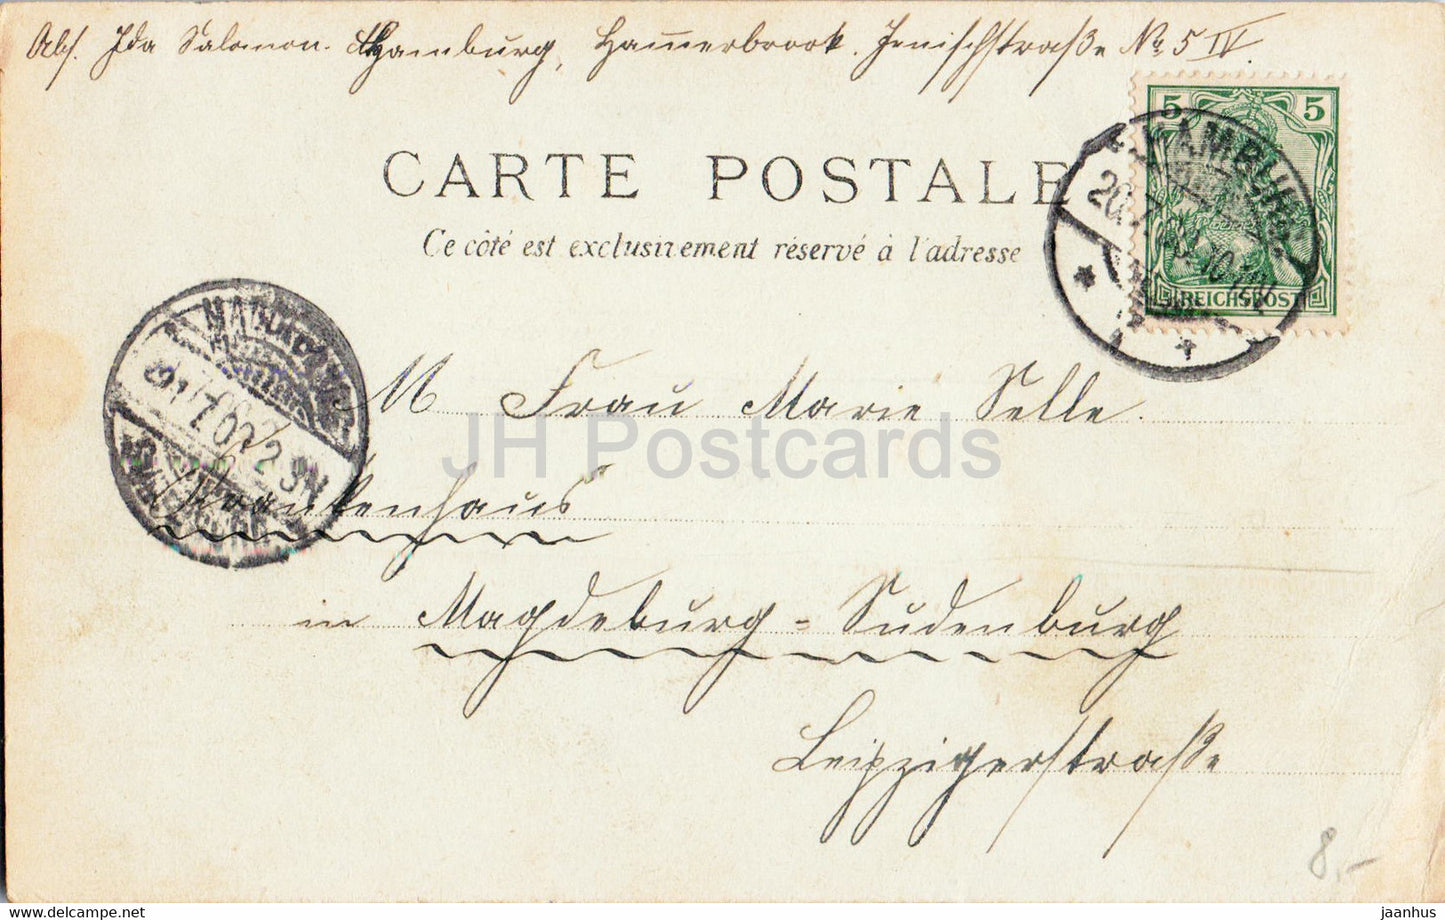 Paris - Exposition Universelle 1900 - Grand Restaurant Gruber et Cie - alte Postkarte - 1900 - Frankreich - gebraucht